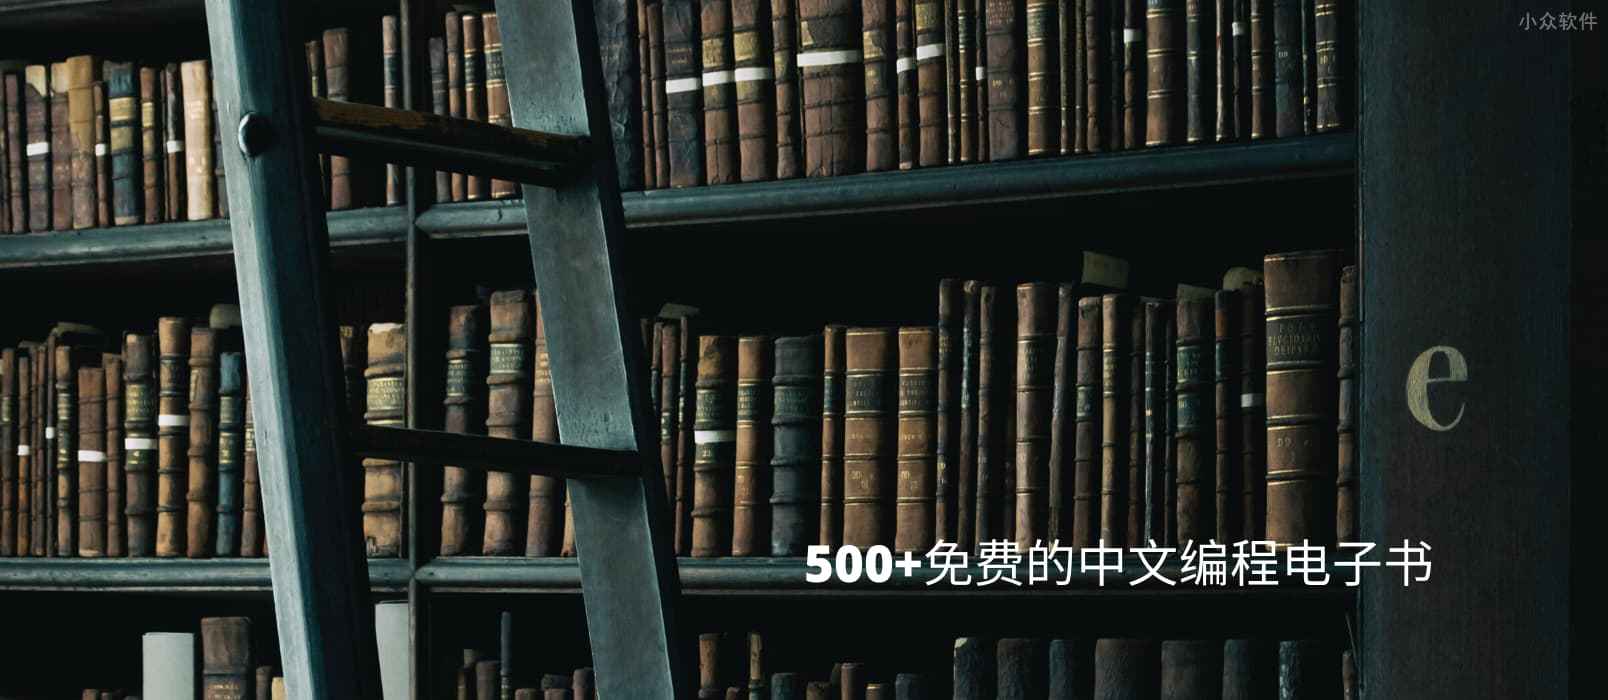 500+ 免费的中文编程电子书